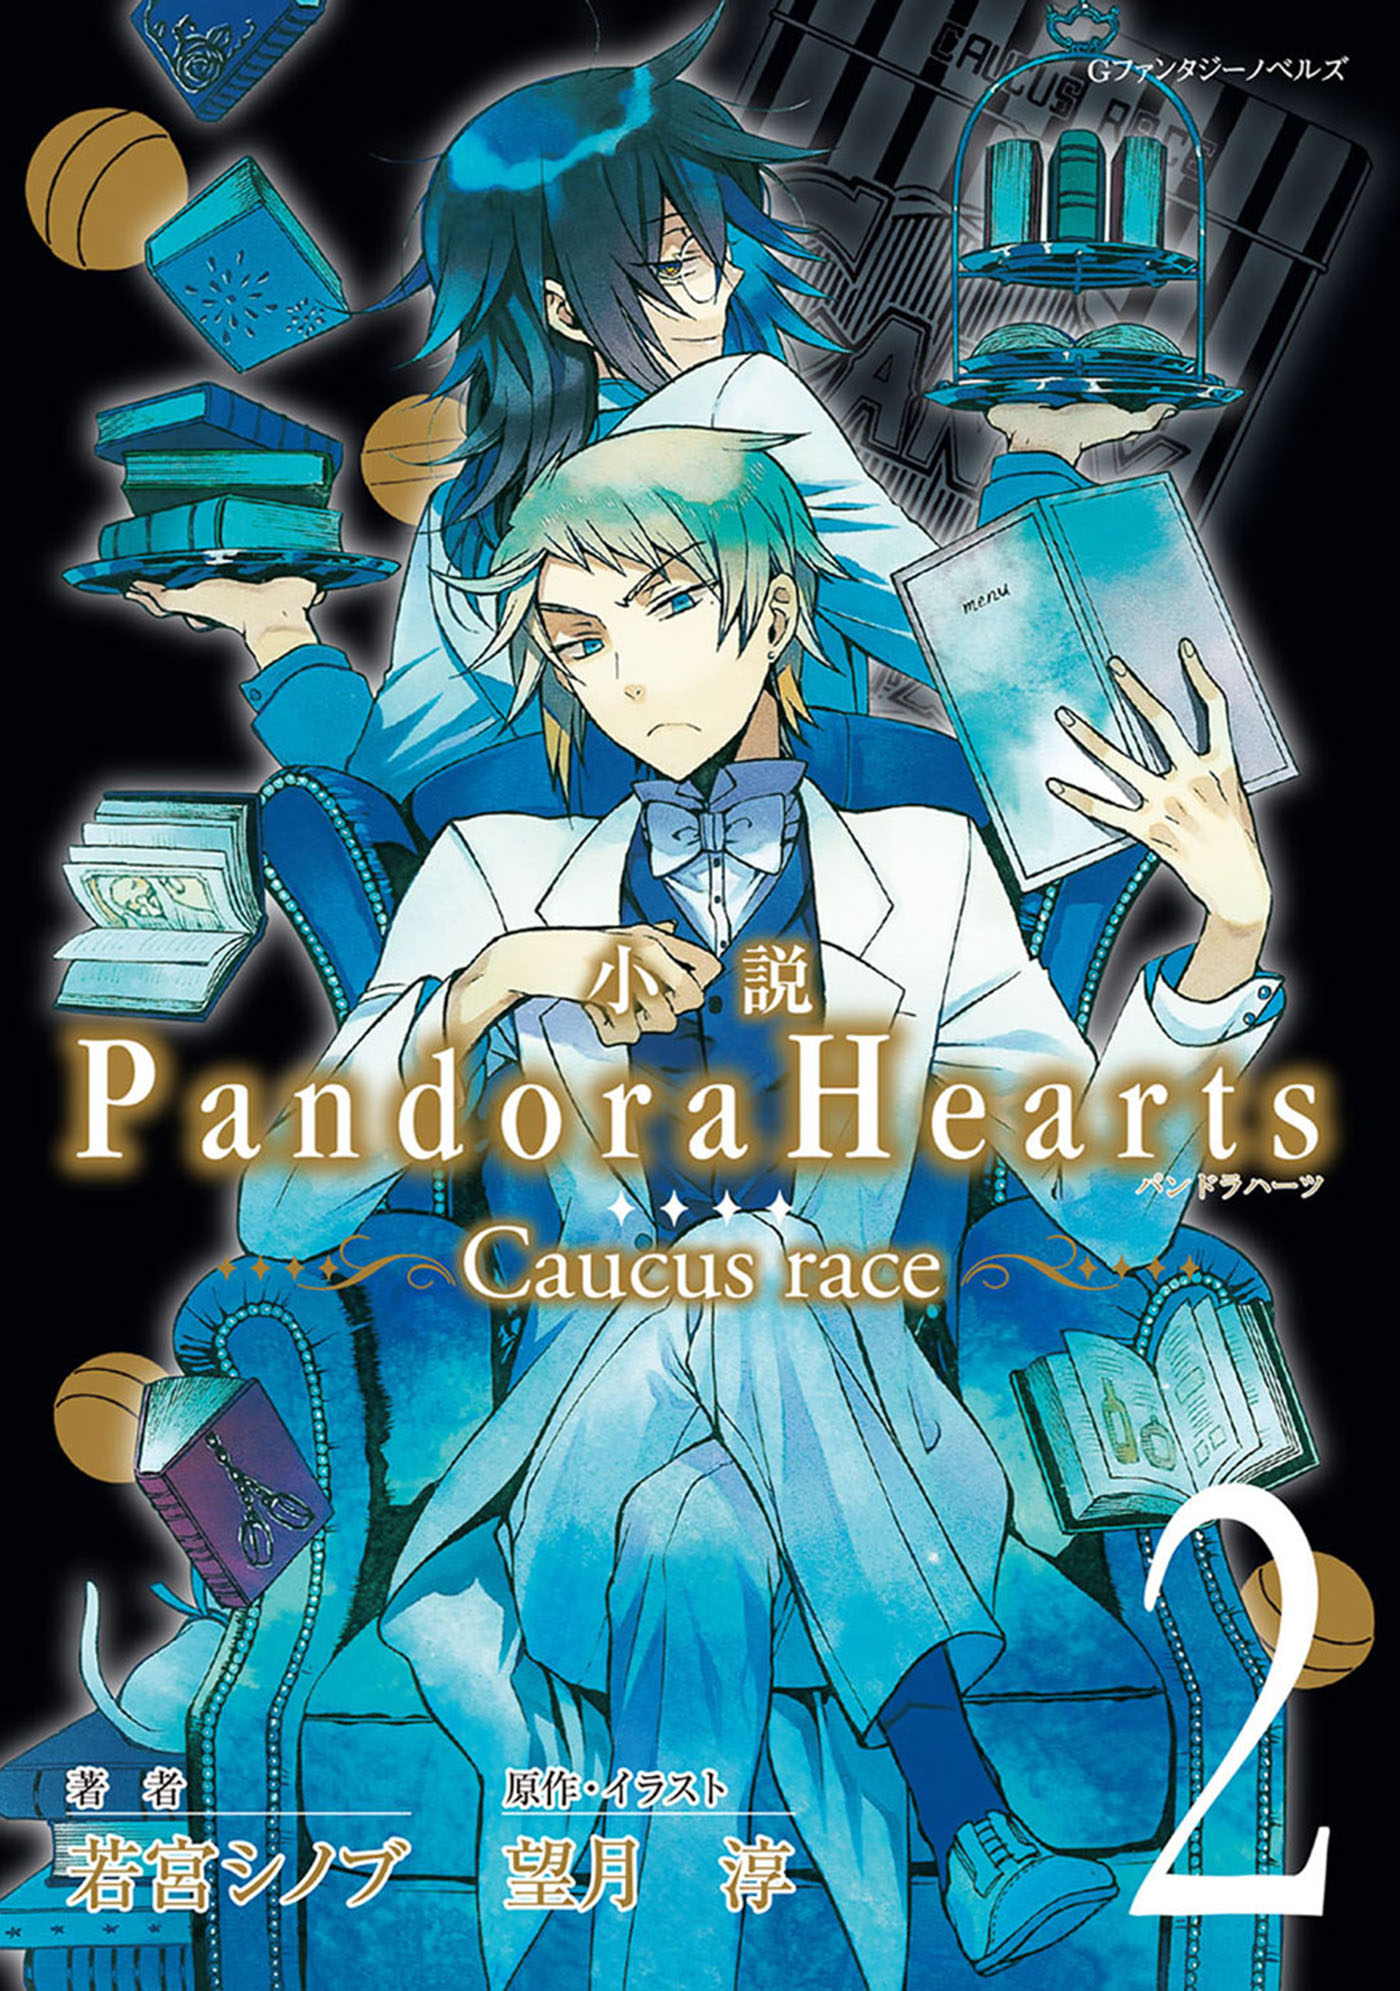 PandoraHearts パンドラハーツ 漫画 コミック 単行本 セット - 漫画